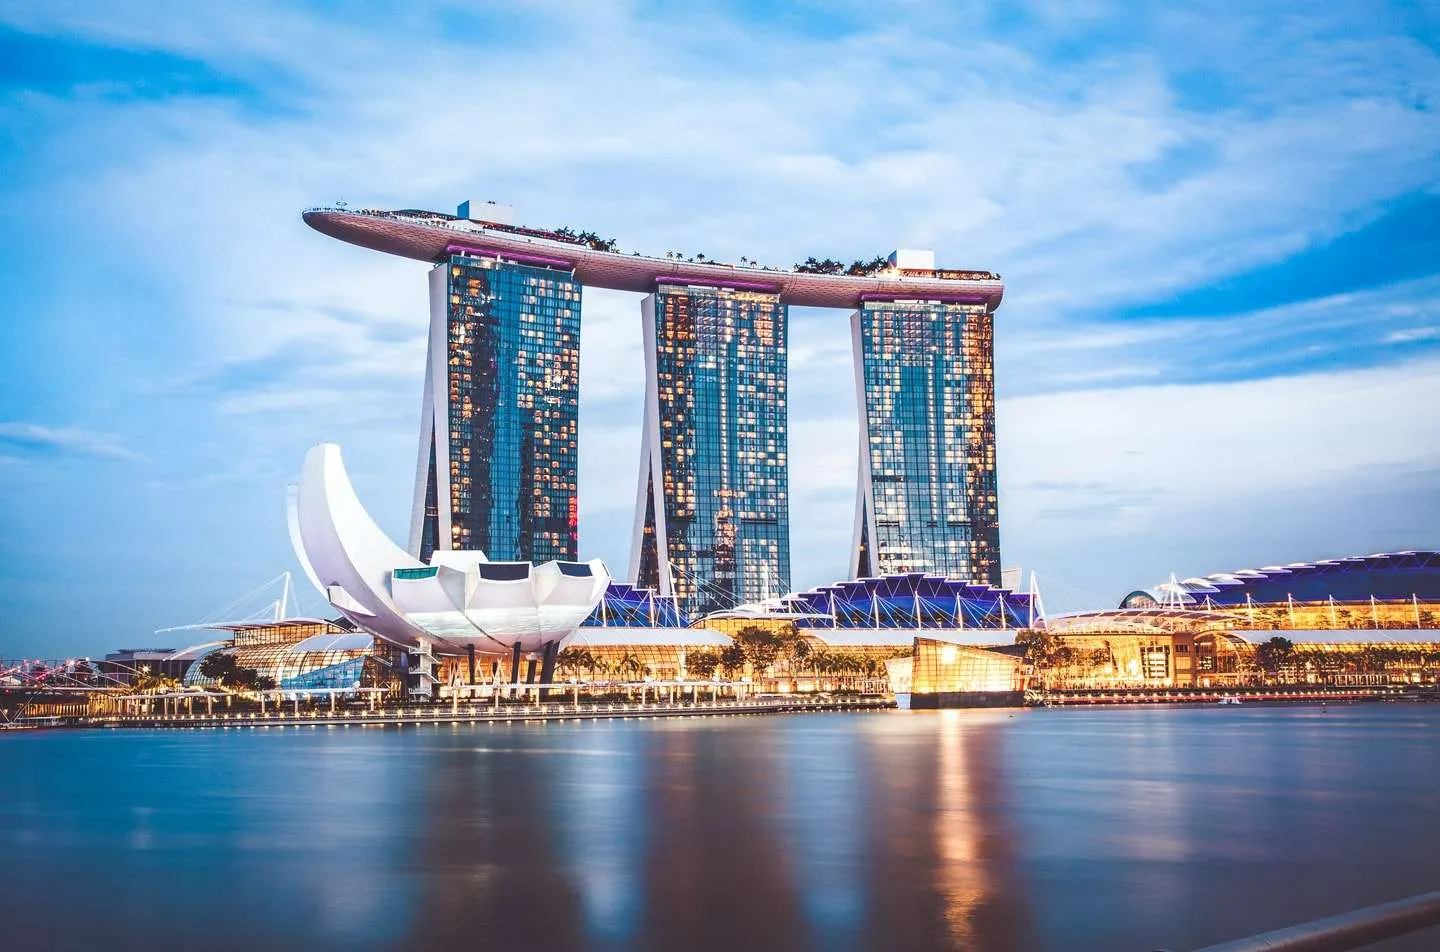 Marina Bay Sands - trung tâm sầm uất bậc nhất của Singapore